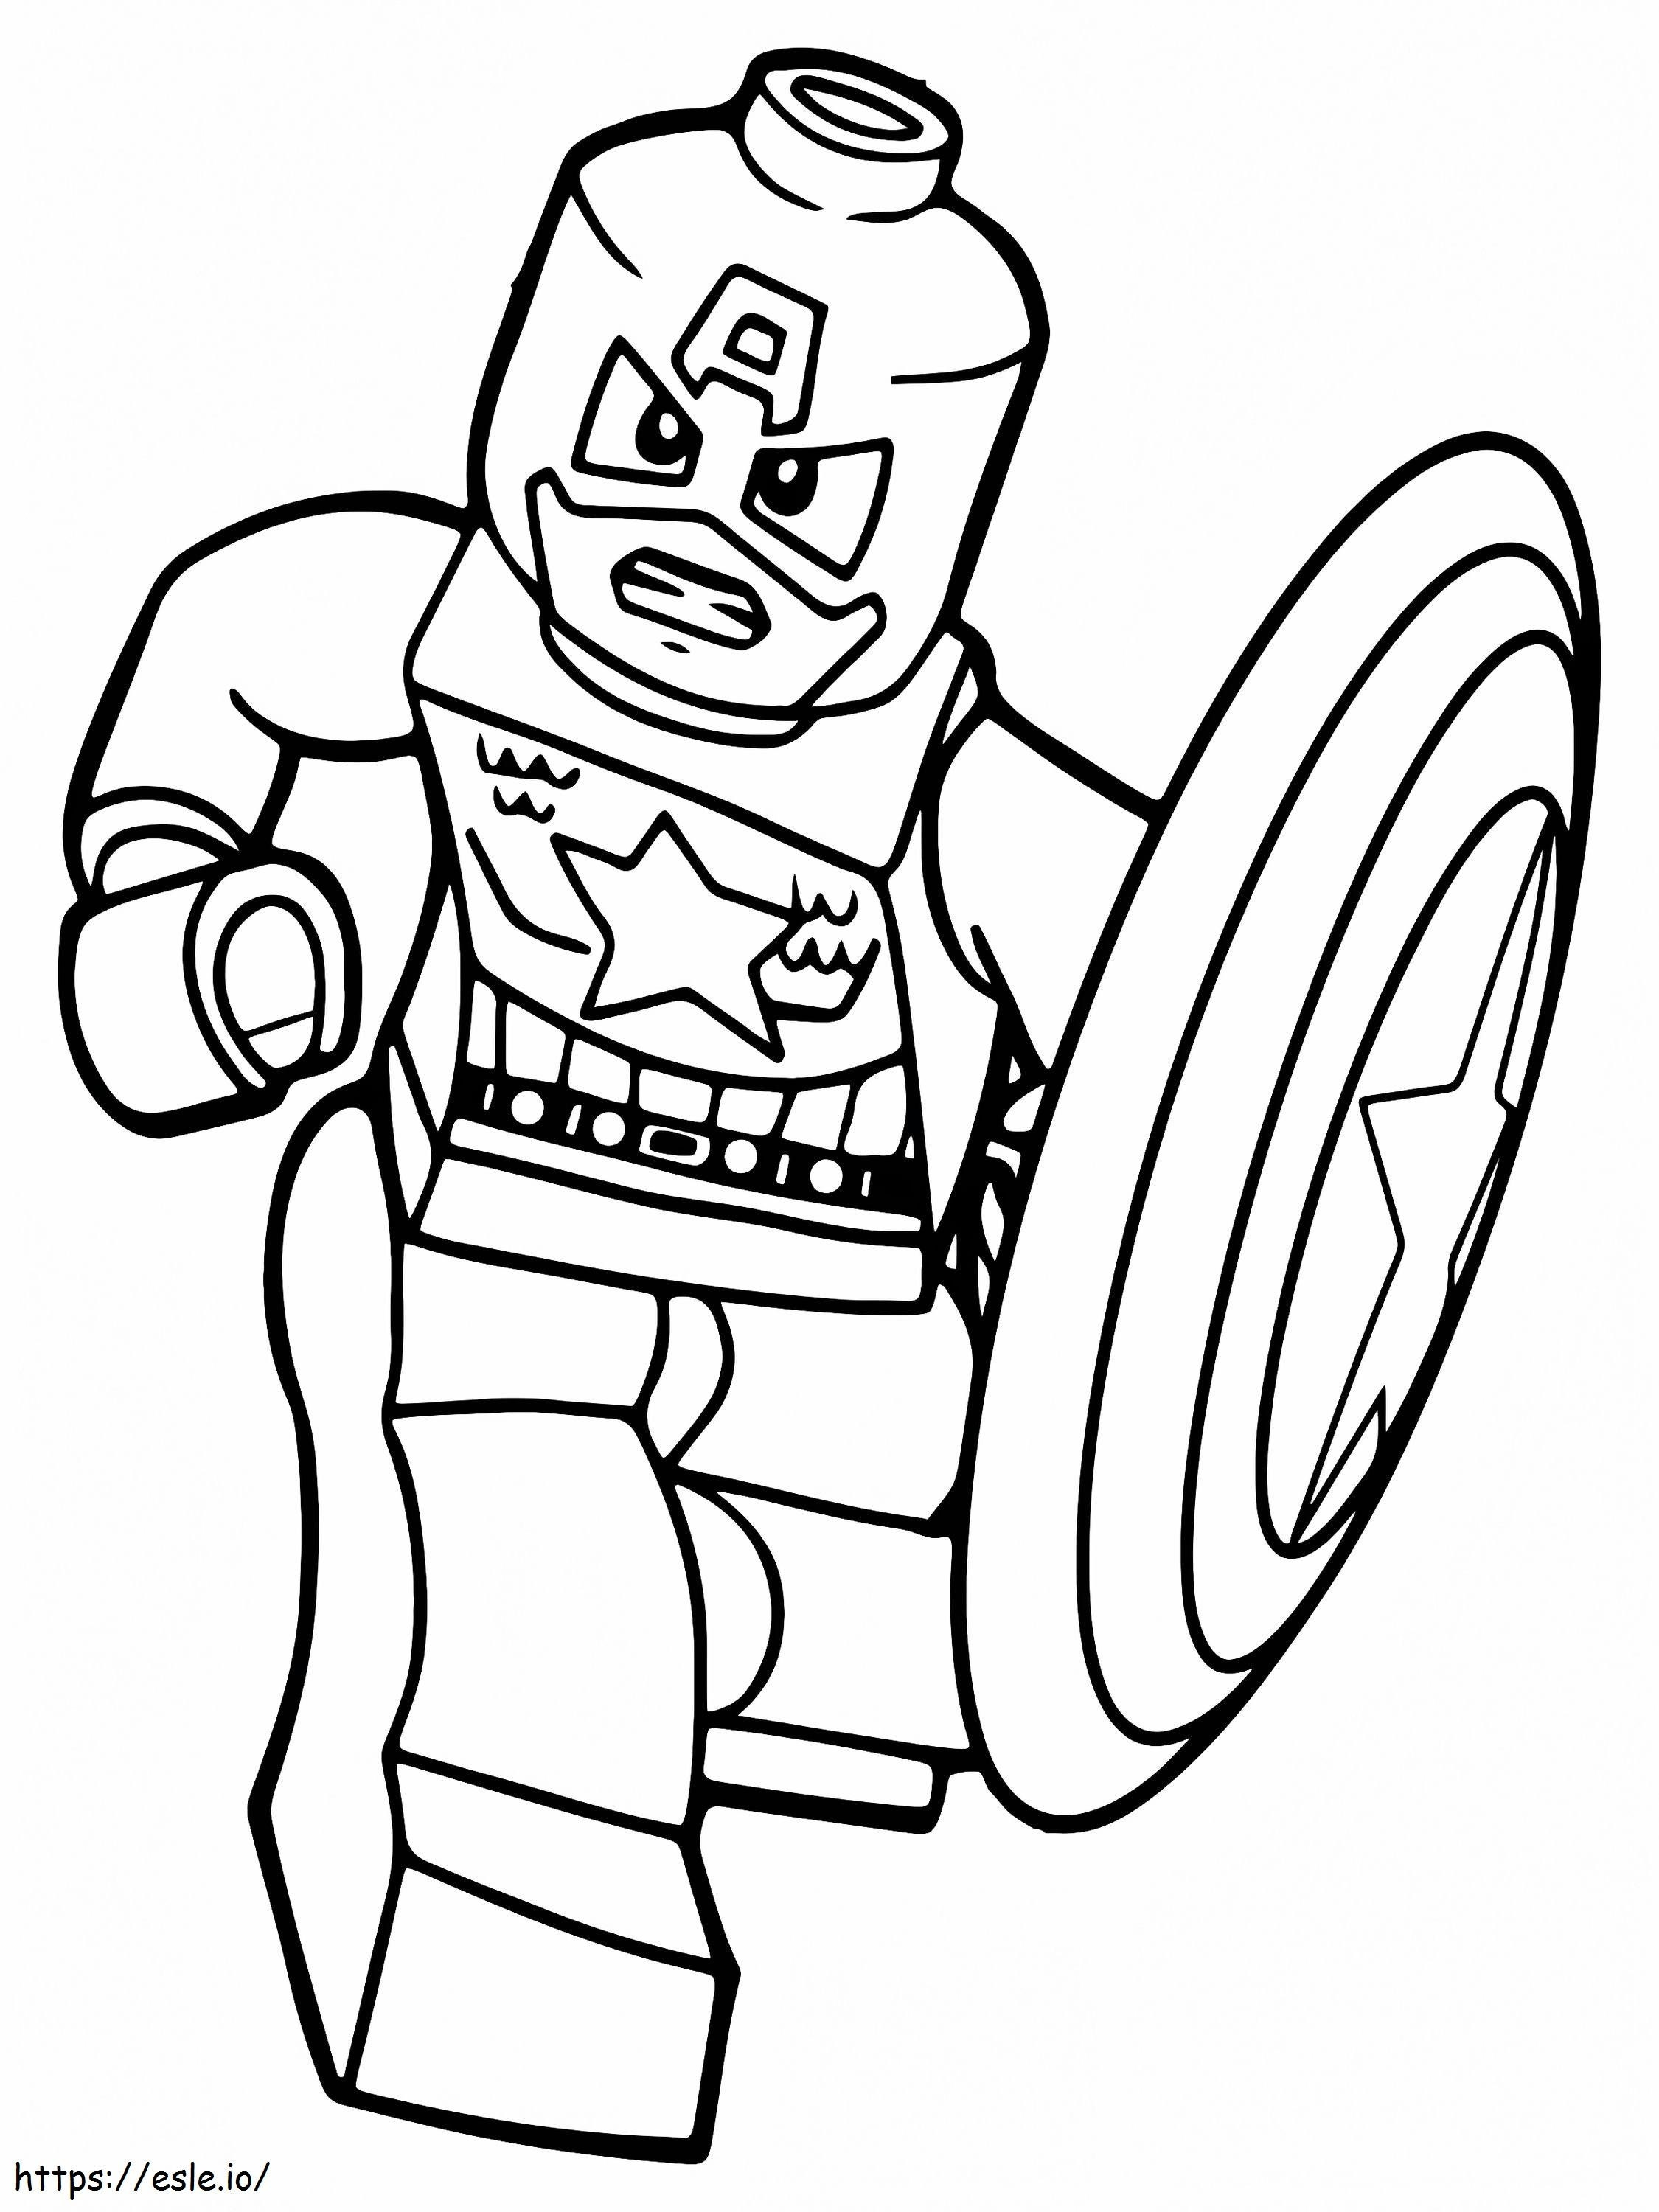 Felkészült Amerika Kapitány Lego Avengers kifestő